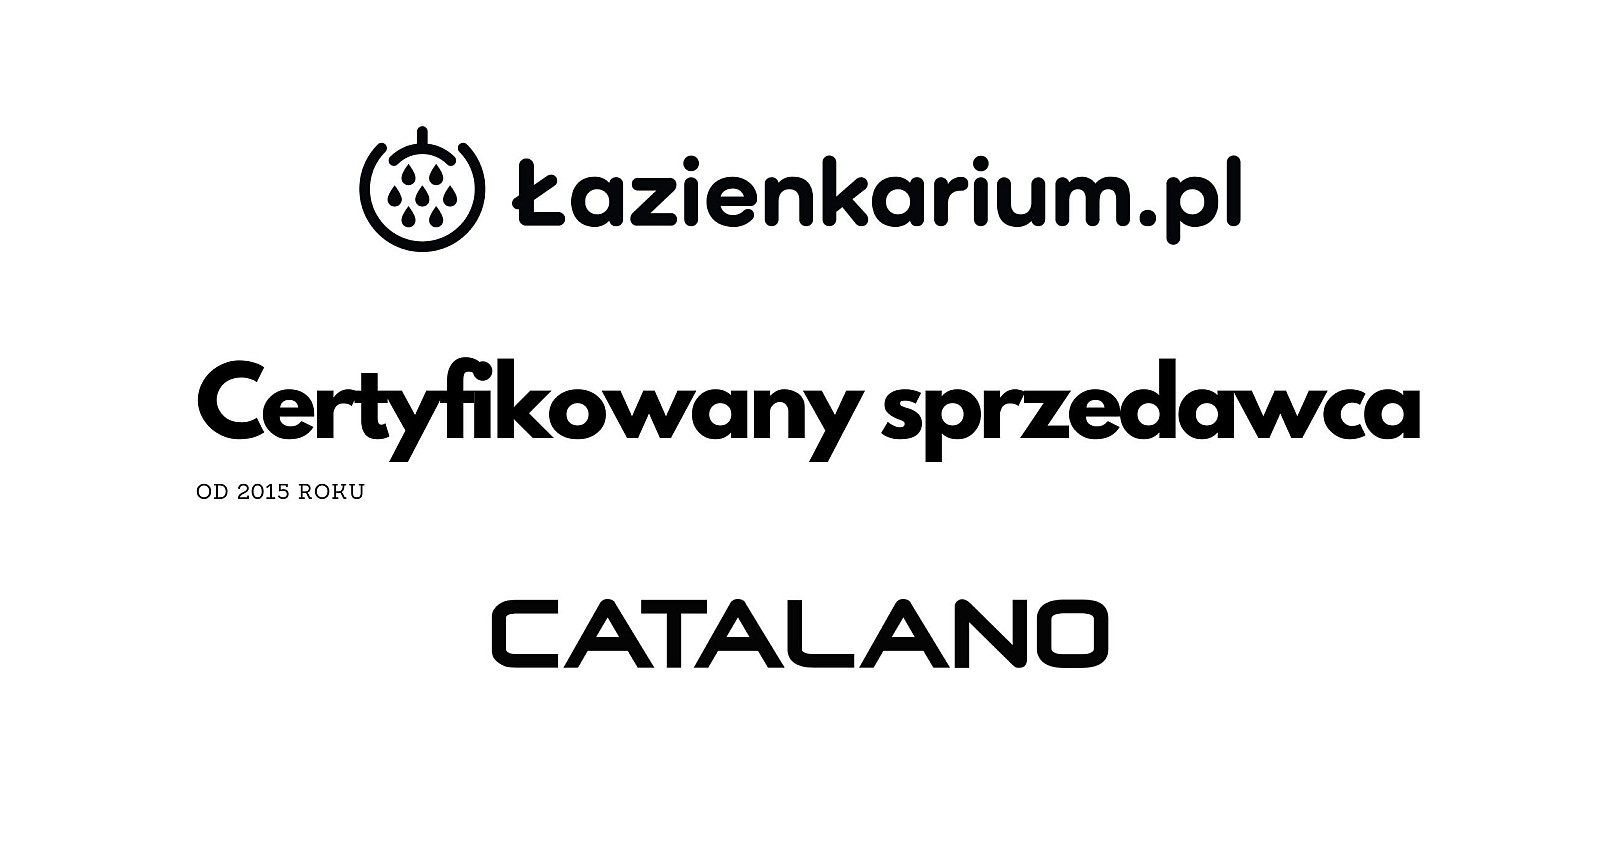 Catalano Polska Certyfikowany sprzedawca gnsbud